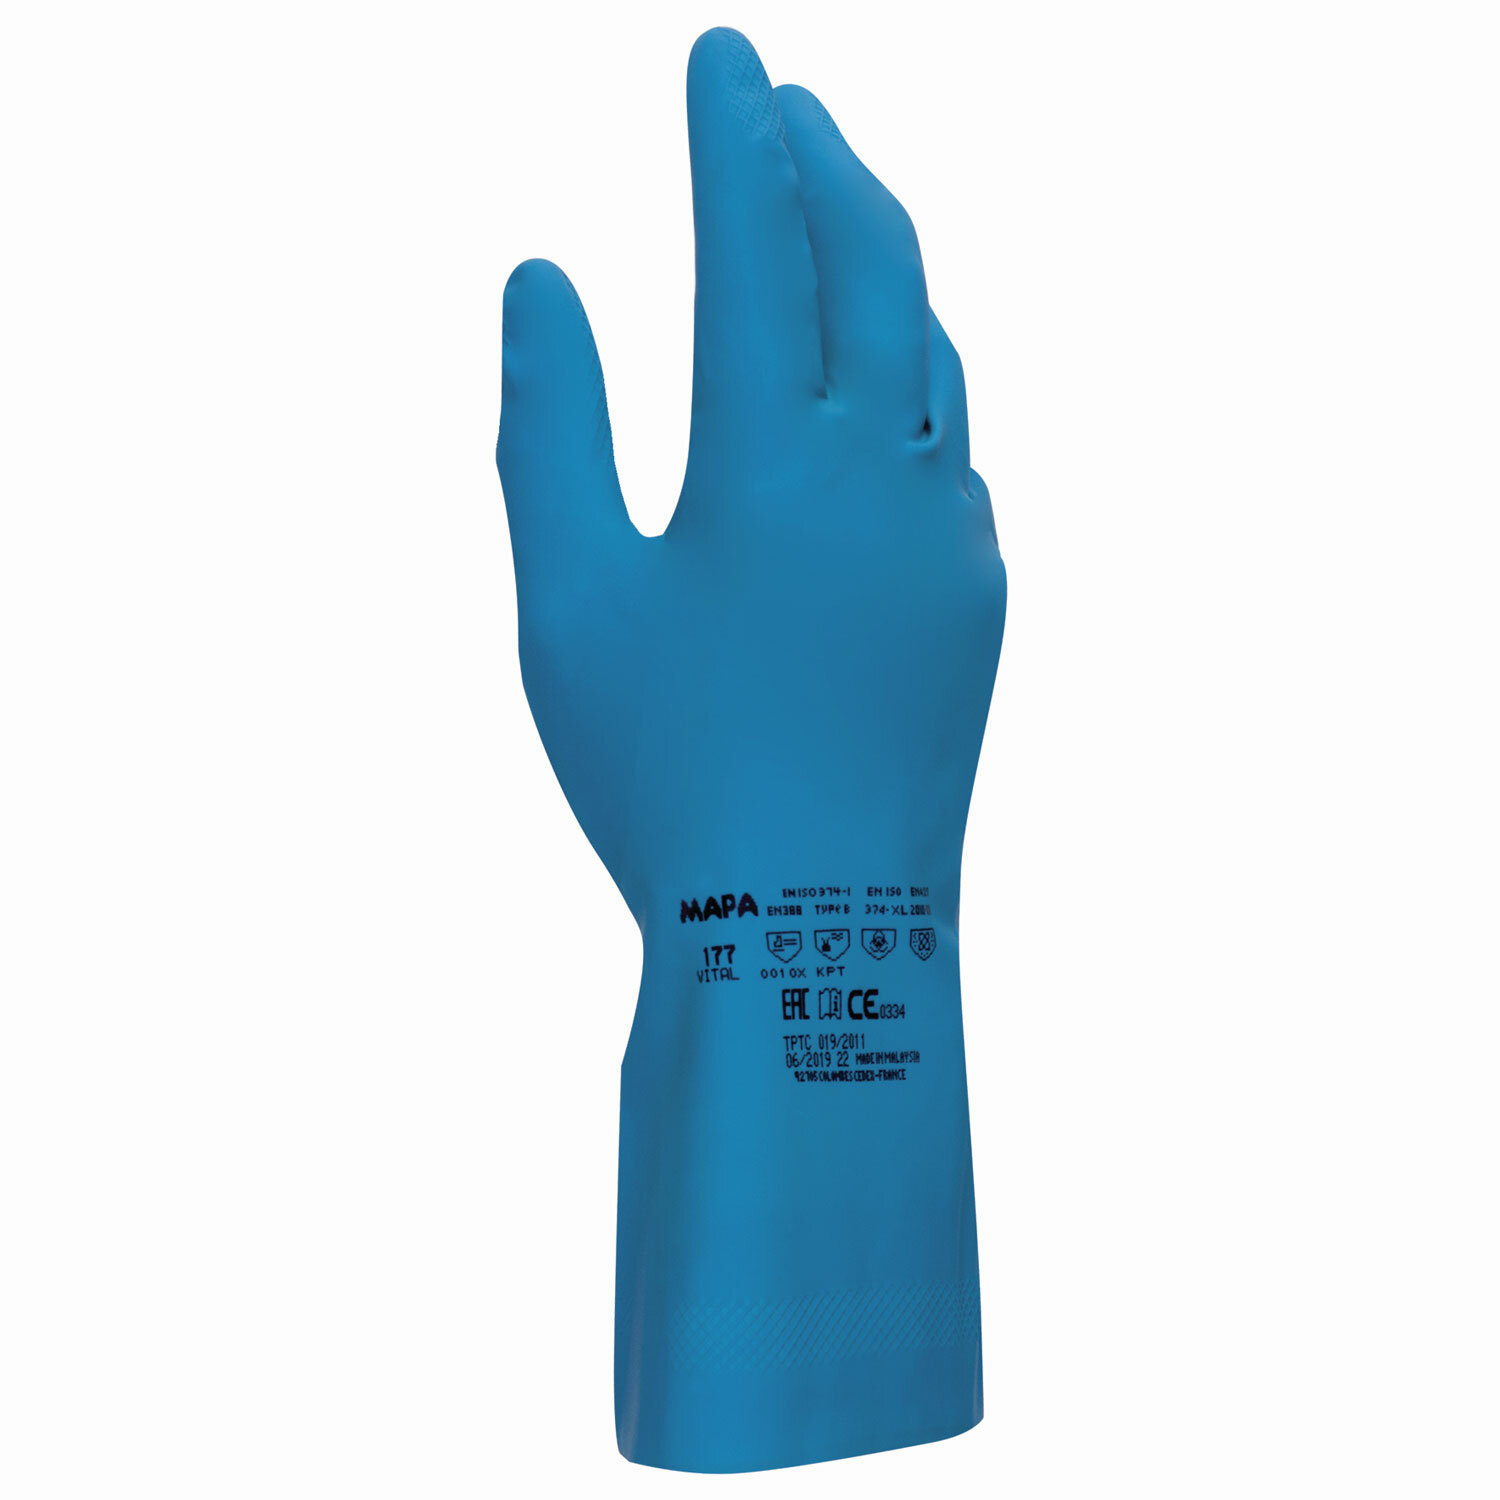 Перчатки хозяйственно-бытовые латексные, хлорированное покрытие, от химических воздействий, XL/10, синий, MAPA Superfood/Vital (Vital 177)